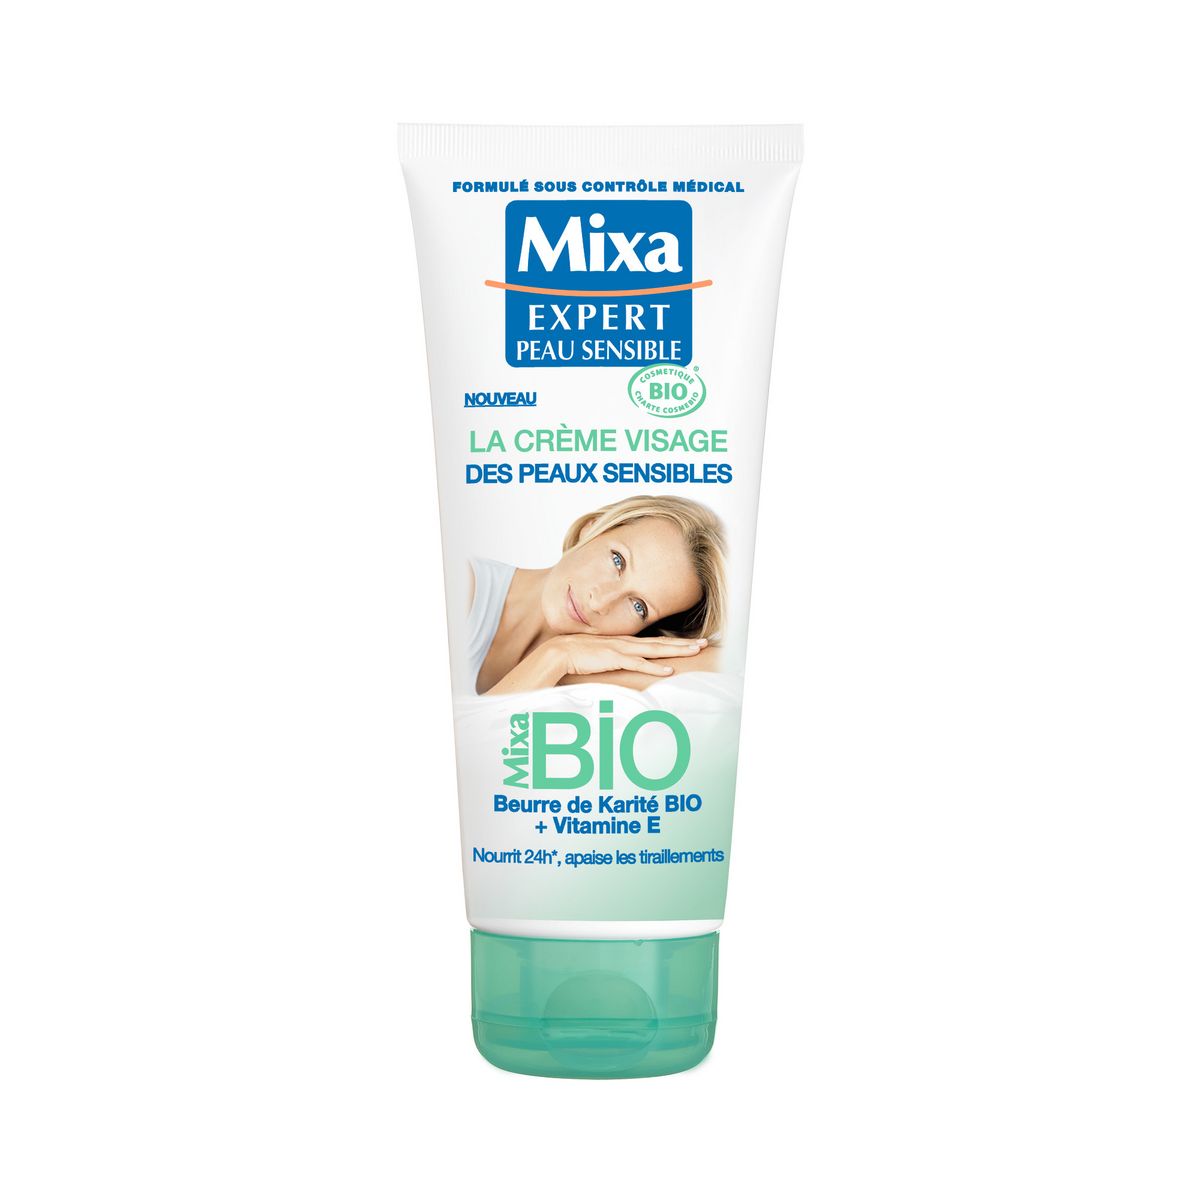 MIXA BIO Crème visage peaux sensibles beurre de karité bio 100ml